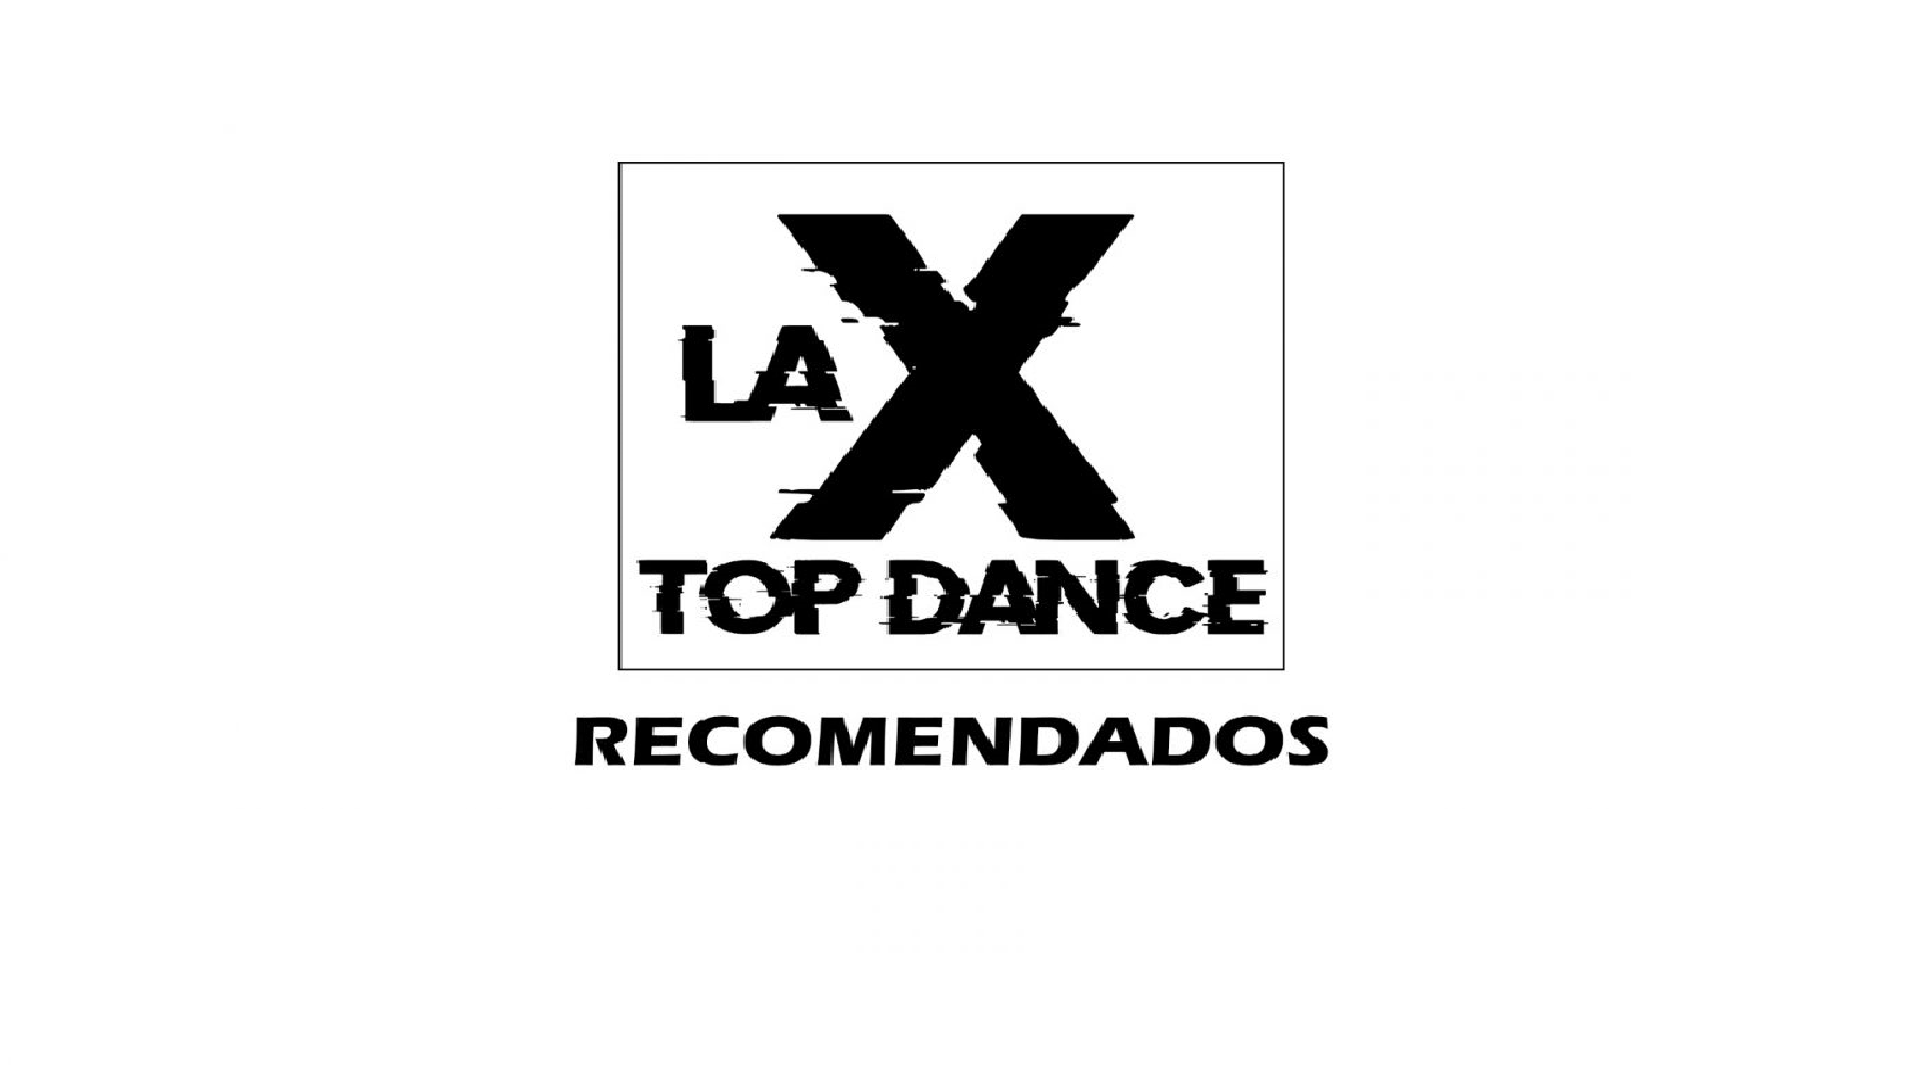 RECOMENDADOS LA X TOP DANCE 17 DE SEPTIEMBRE